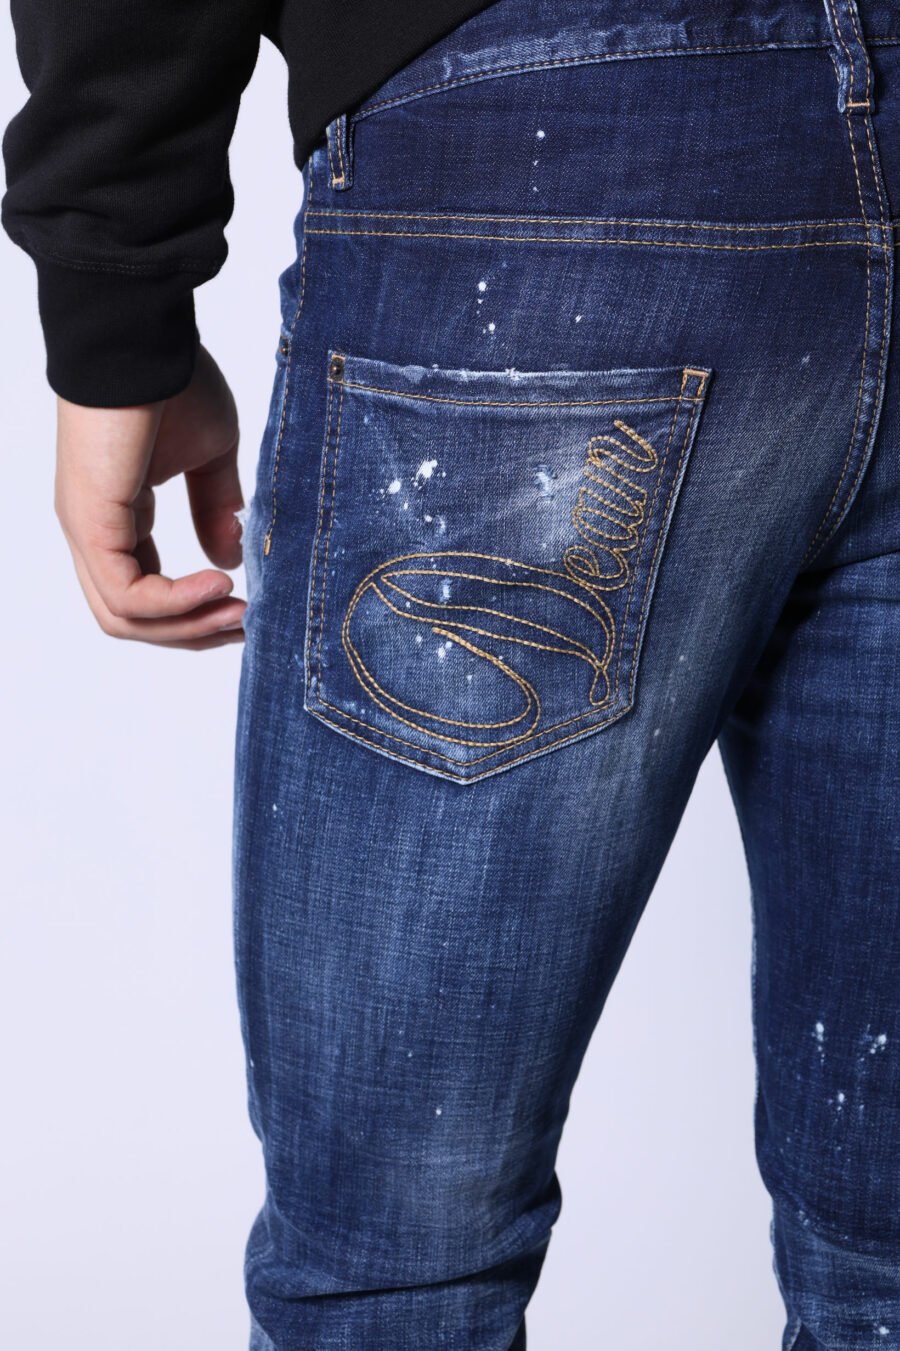 Blaue "cool guy jean" Jeans mit Farbe und ausgefranst - Ohne Titel Katalog 05413